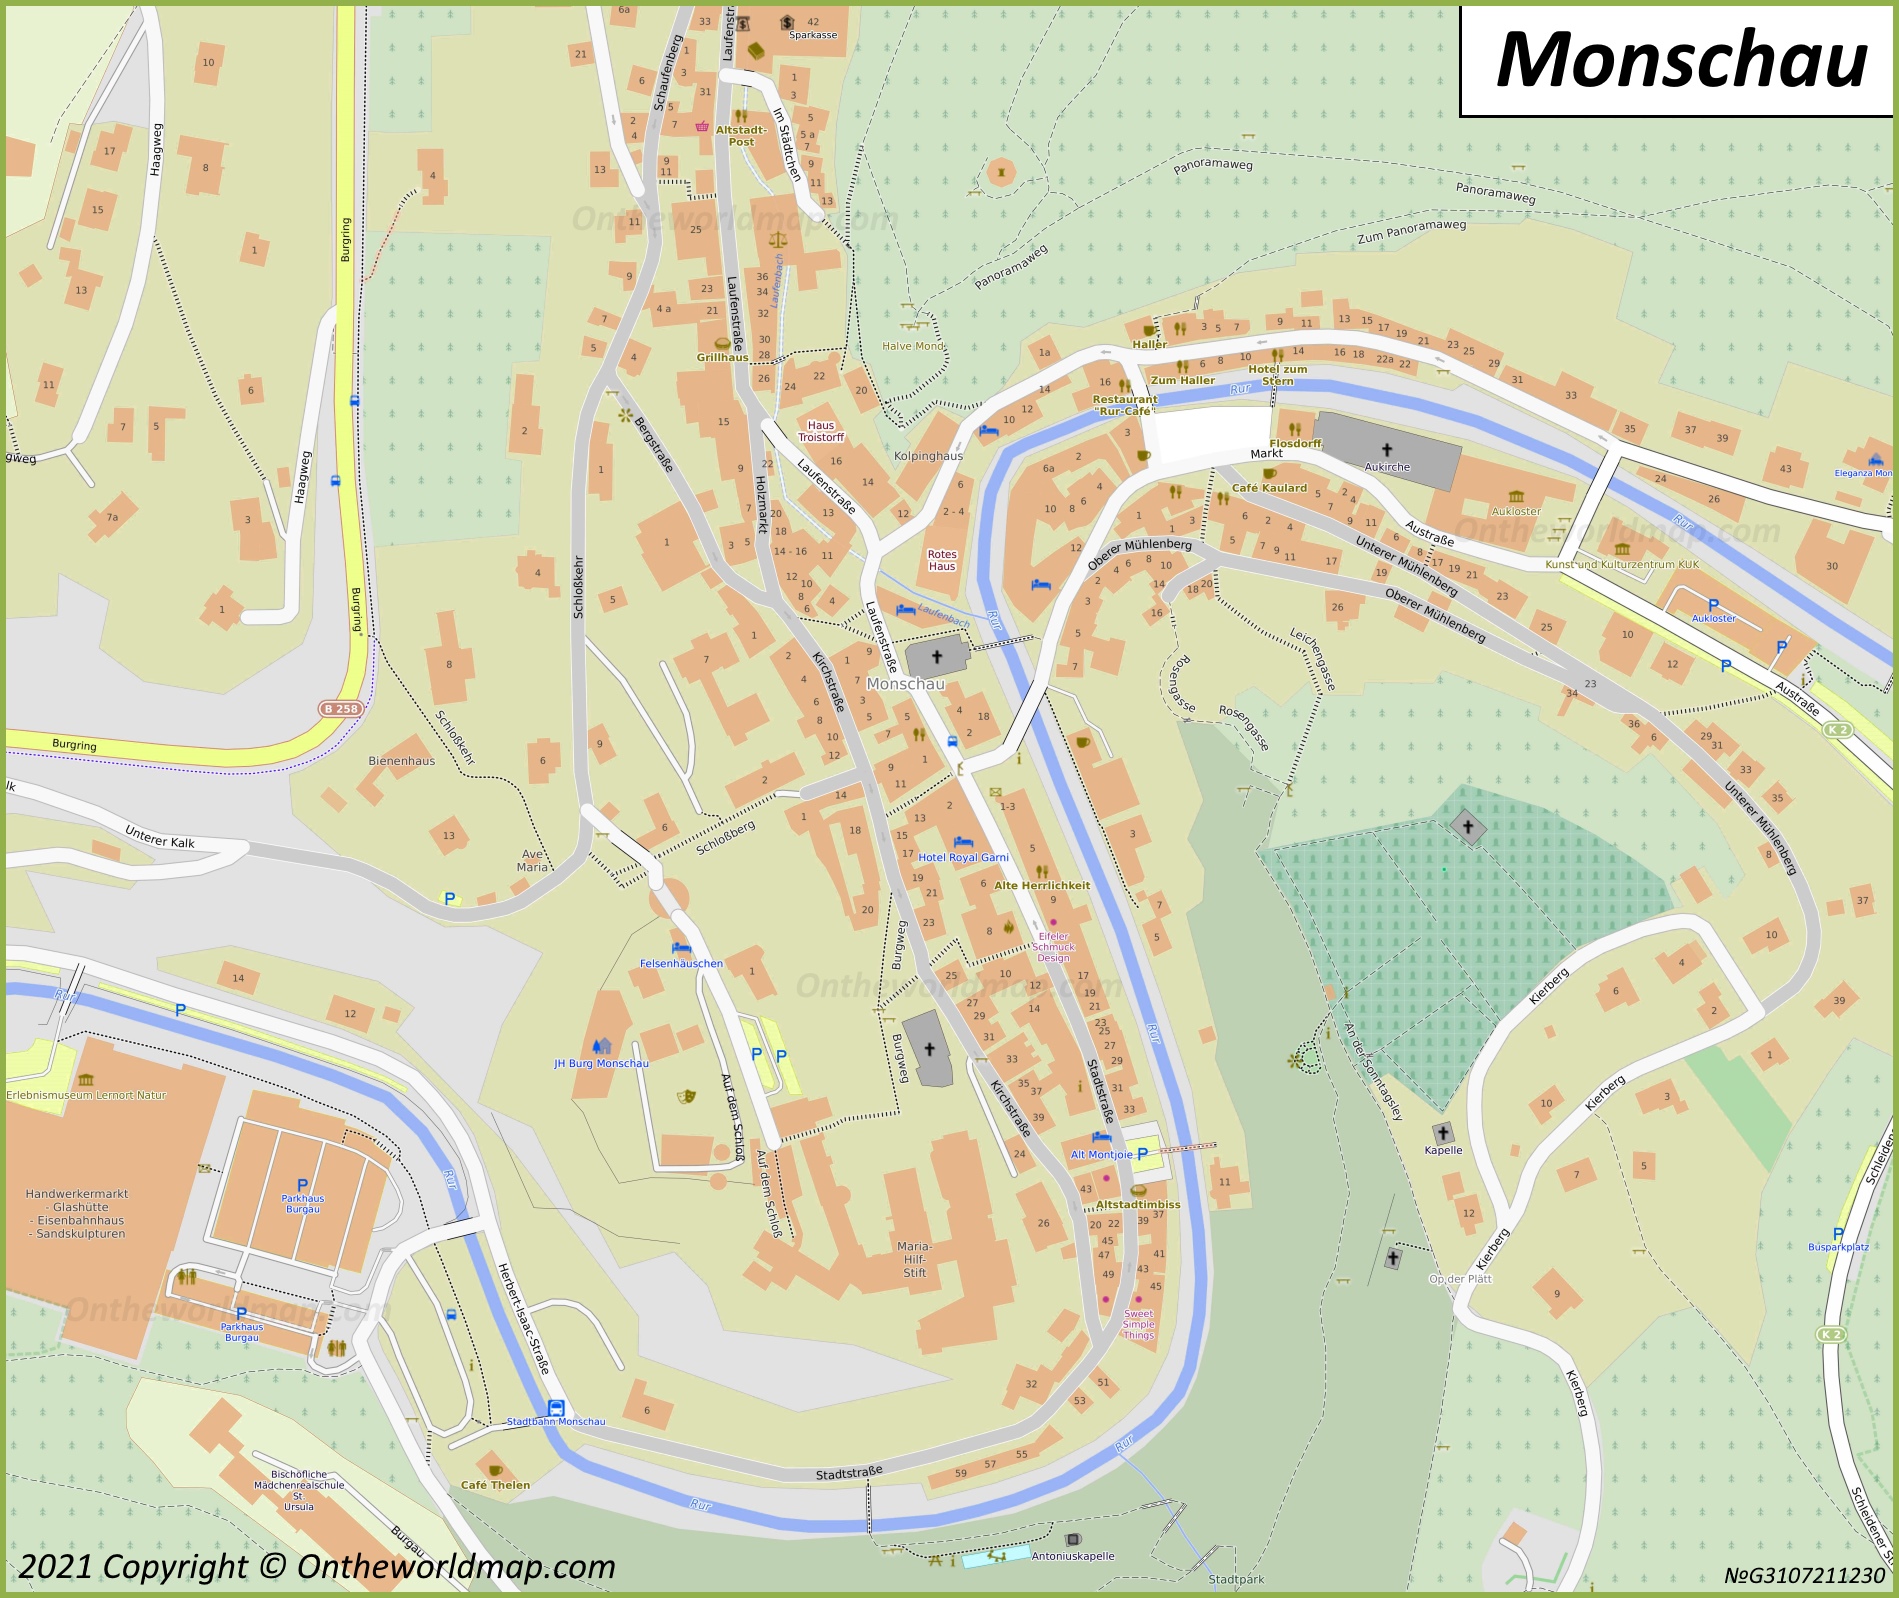 Monschau Town Center Map